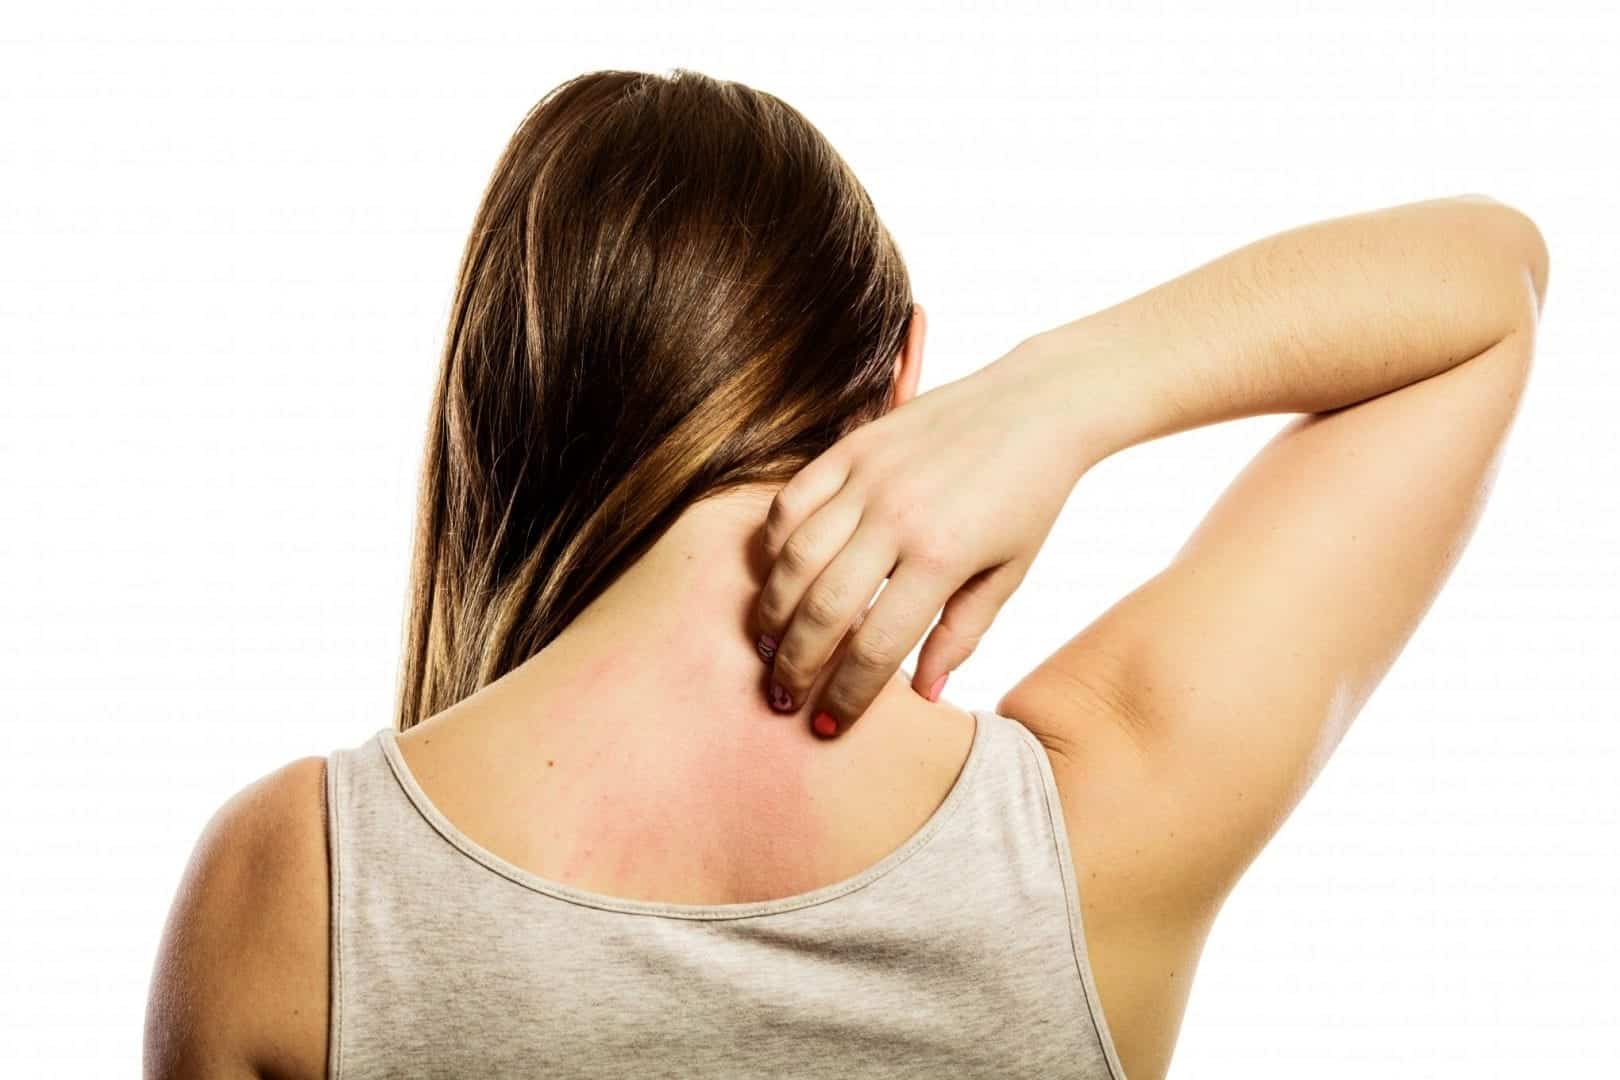 Alergias na pele - o que é, o que causa e como tratar